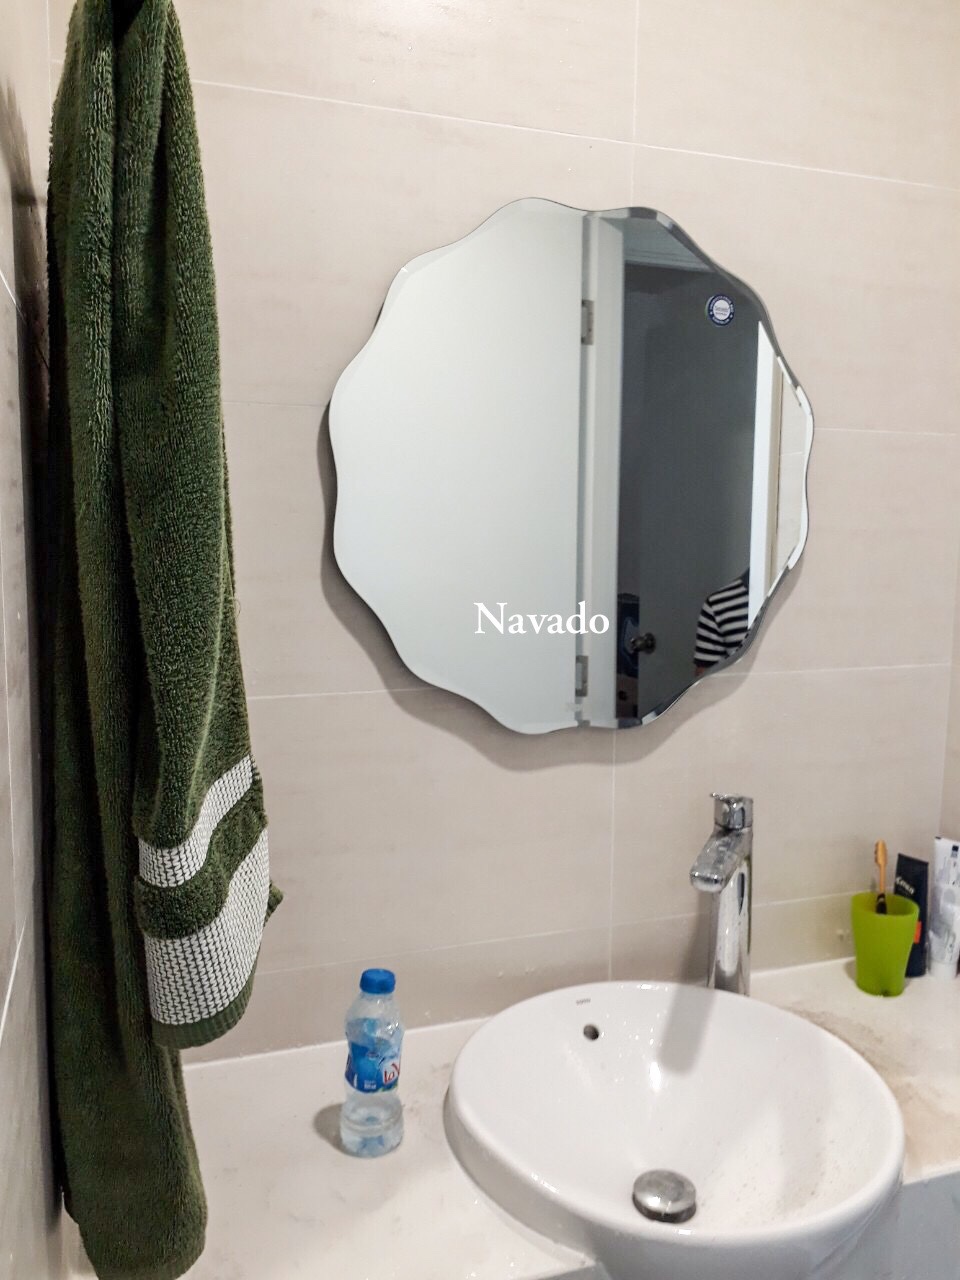 NAV 543B là giải pháp lắp đặt gương nhà tắm cao cấp tốt nhất hiện nay tại Quảng Ninh. Với chất lượng sản phẩm được đảm bảo và đội ngũ kỹ thuật viên có tay nghề cao, khách hàng sẽ hài lòng với quá trình lắp đặt và trải nghiệm tuyệt vời khi sử dụng sản phẩm.